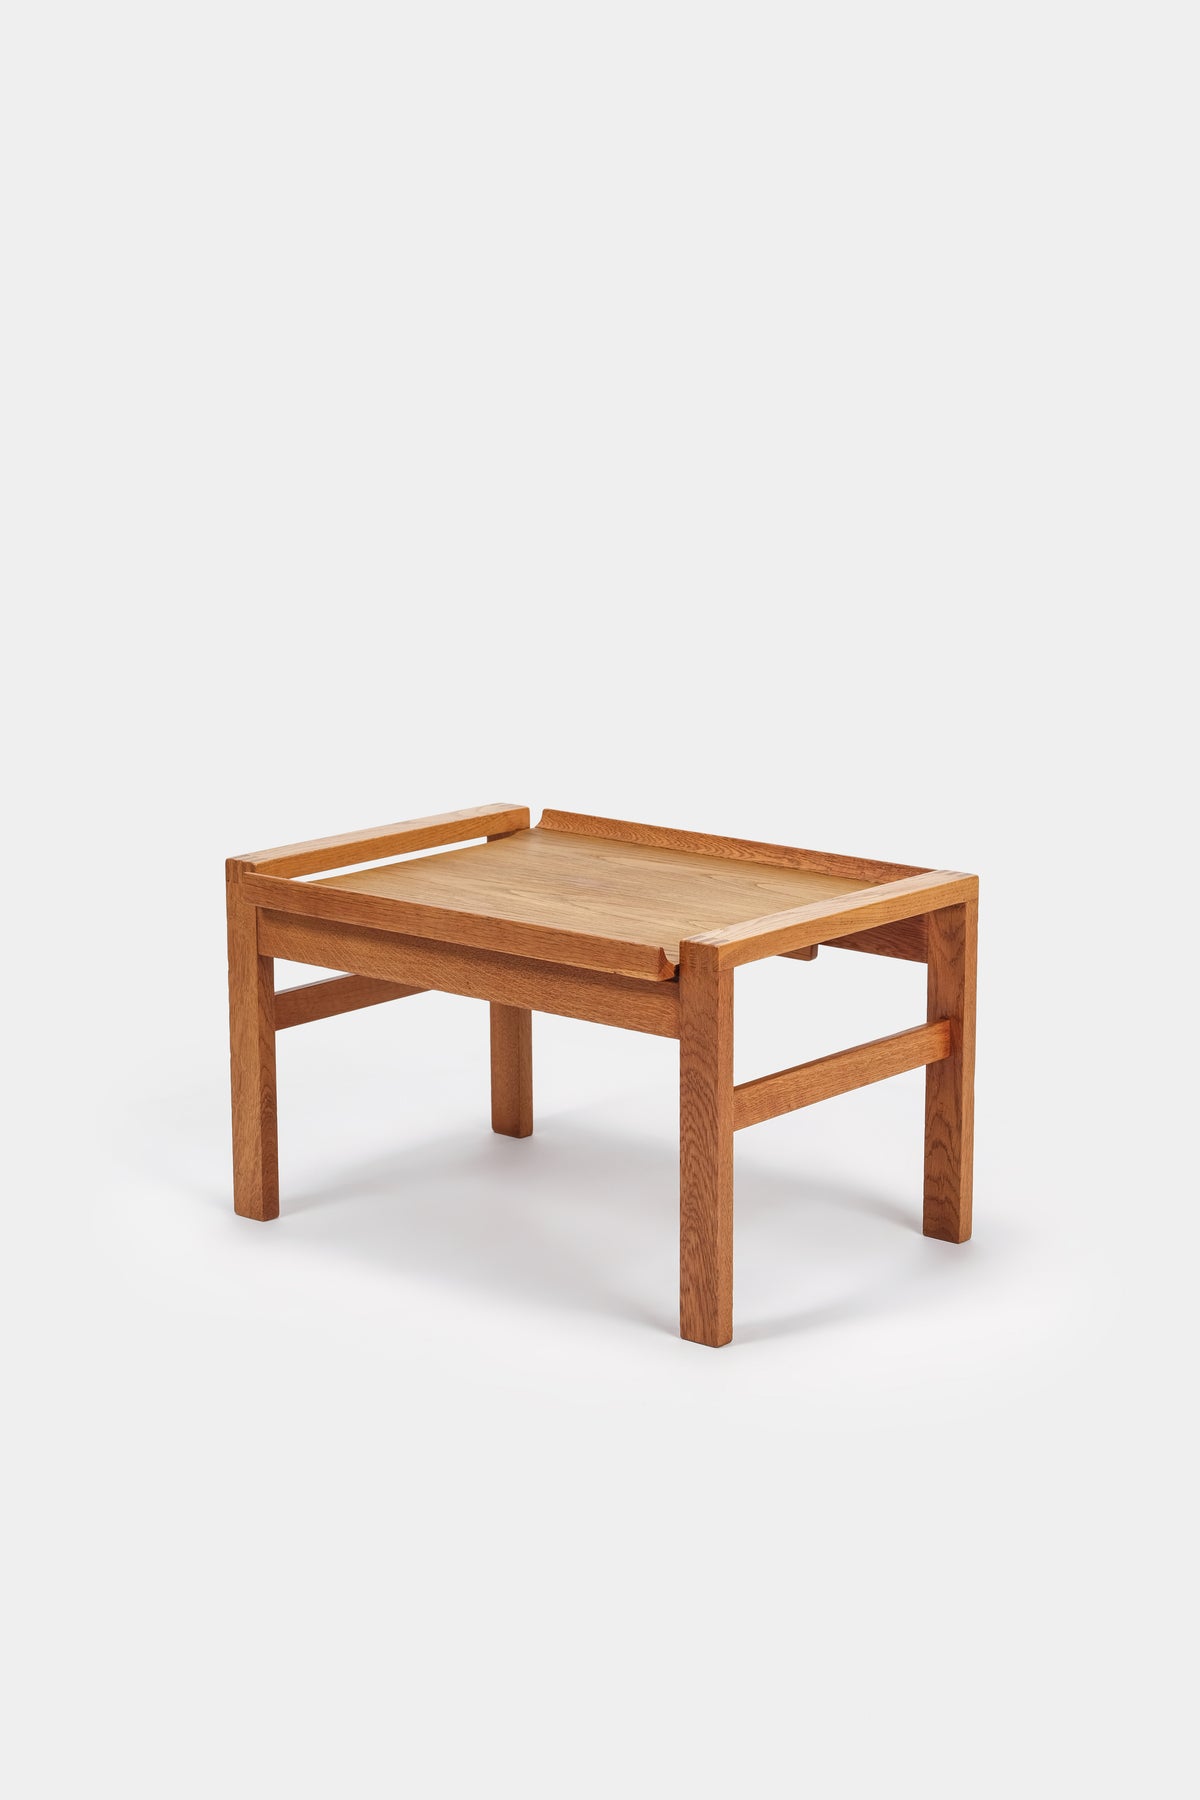 Borge Mogensen, Kleiner Tisch, Dänemark, 60er